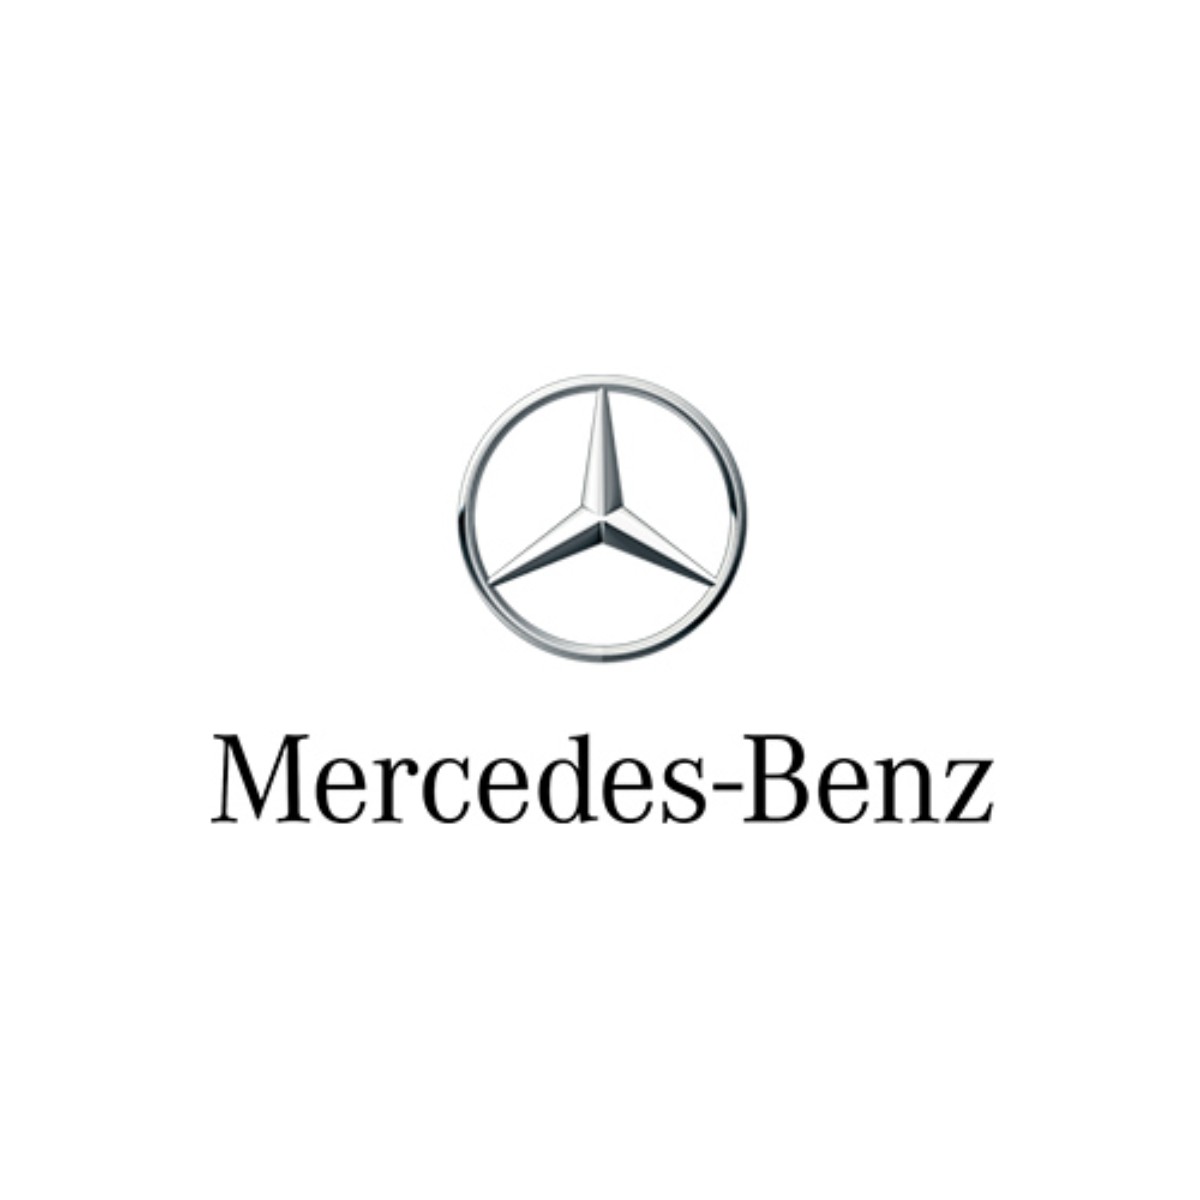 Mercedes-Benz South Africa 2023 Graduate Development Programme